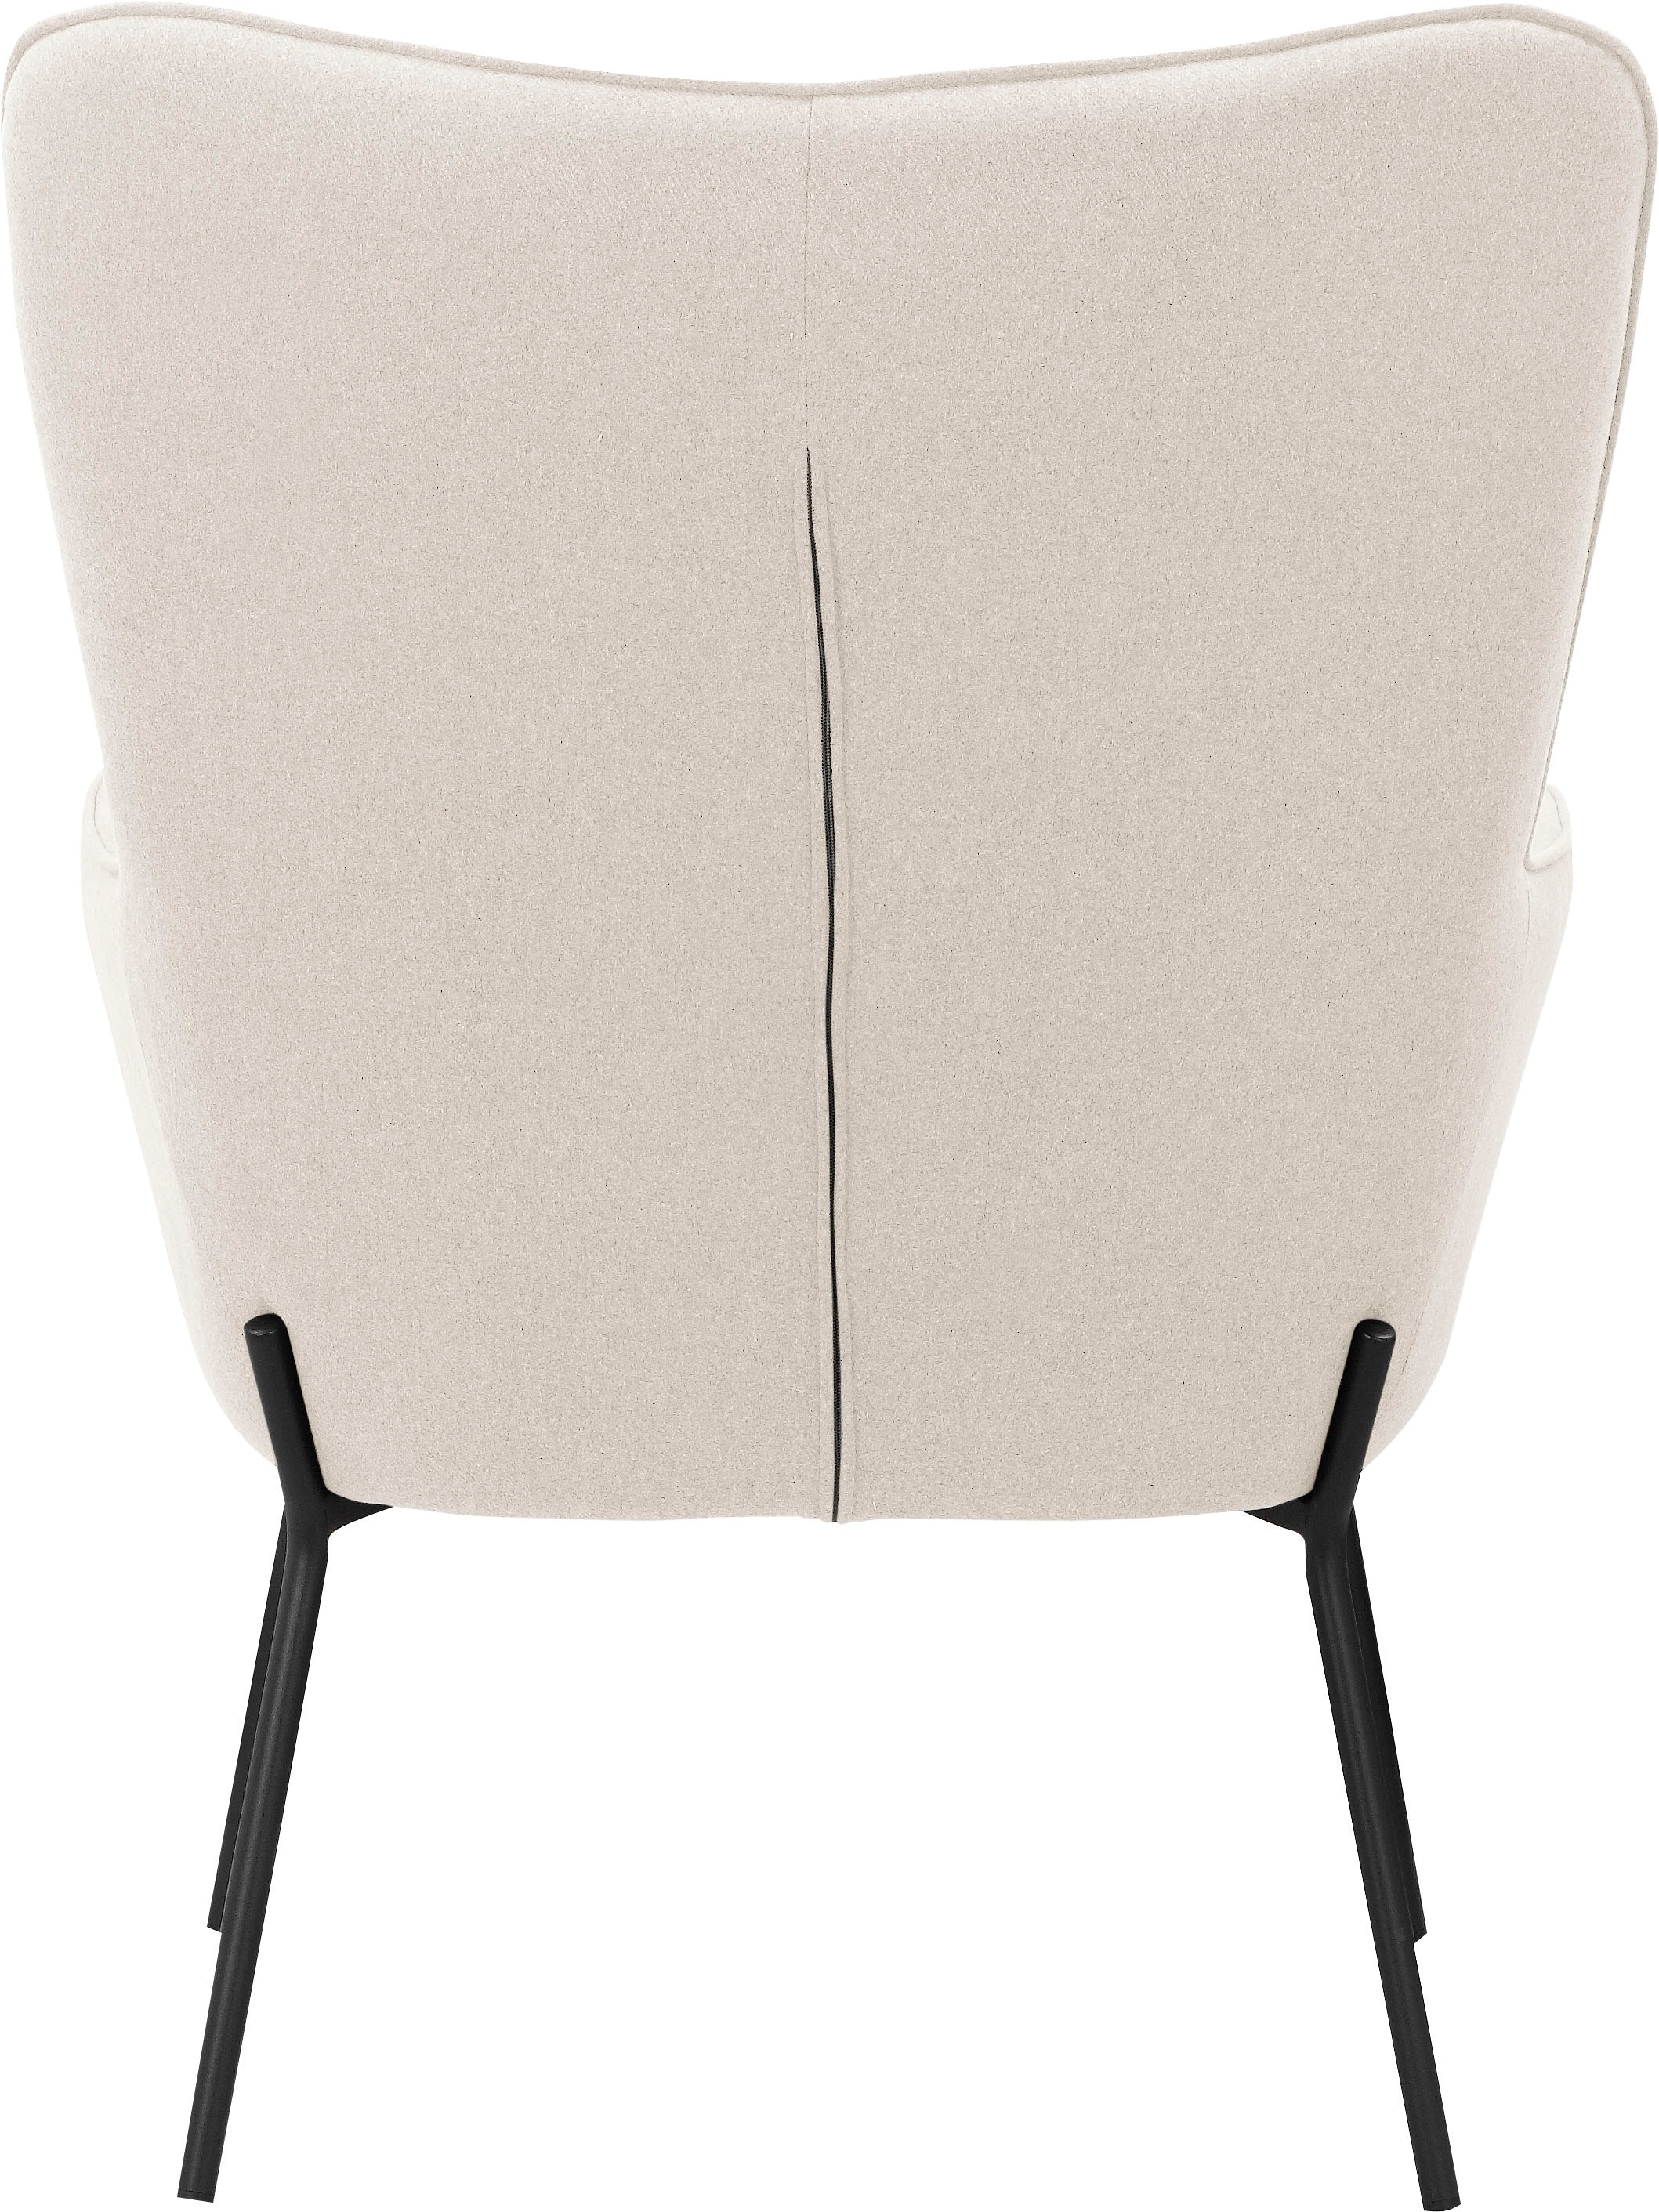 OTTO products Loungesessel »Luukas«, (1 St.), Stoff recyceltes Polyester, Sitz und Rücken gepolstert, Sitzhöhe 46 cm